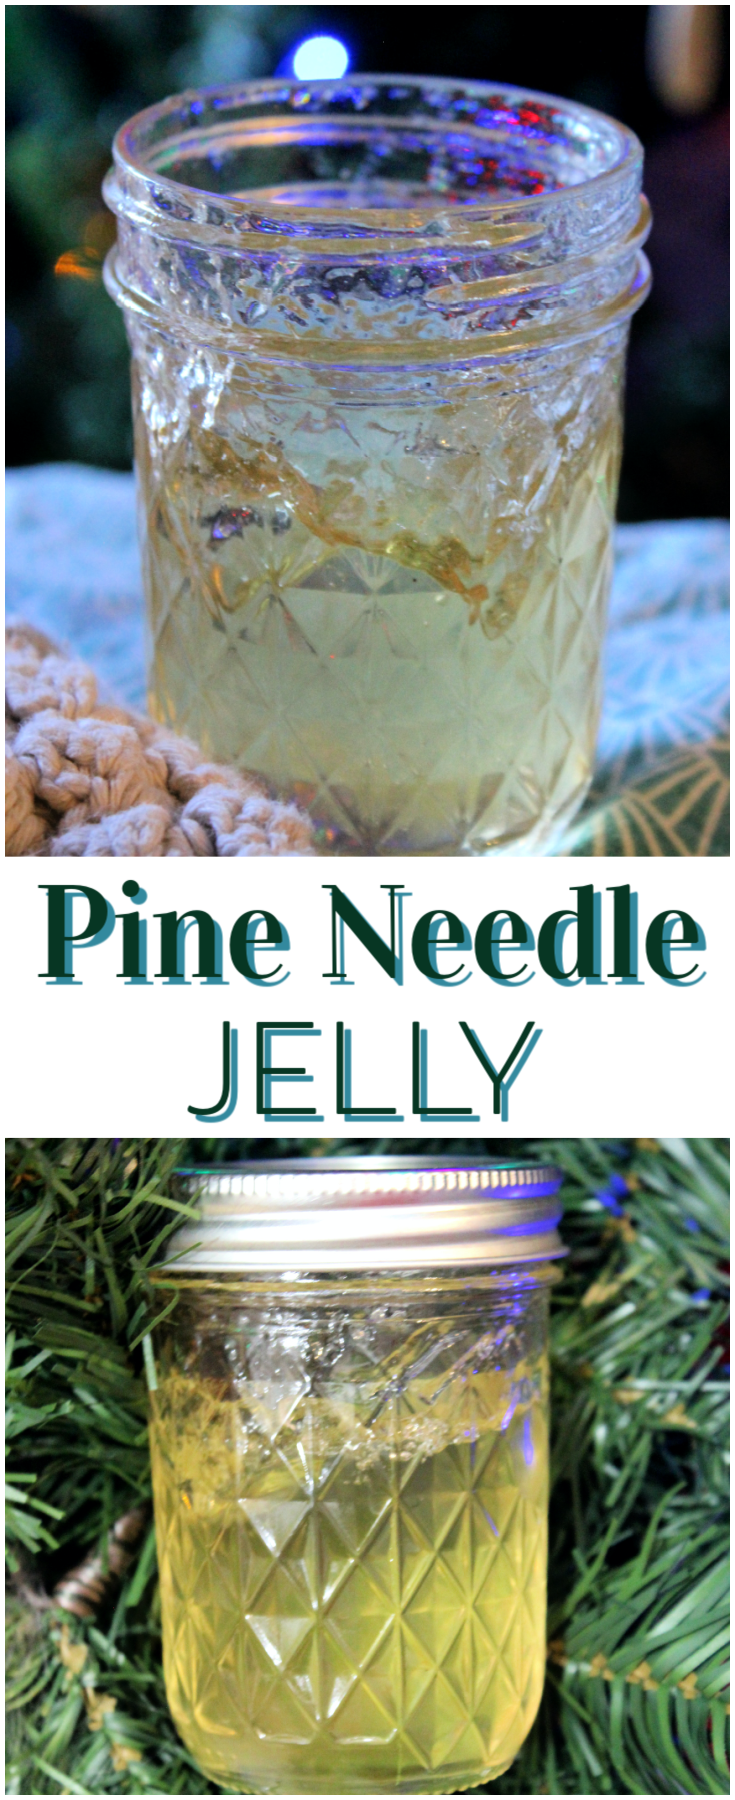 Pine Needle Jelly